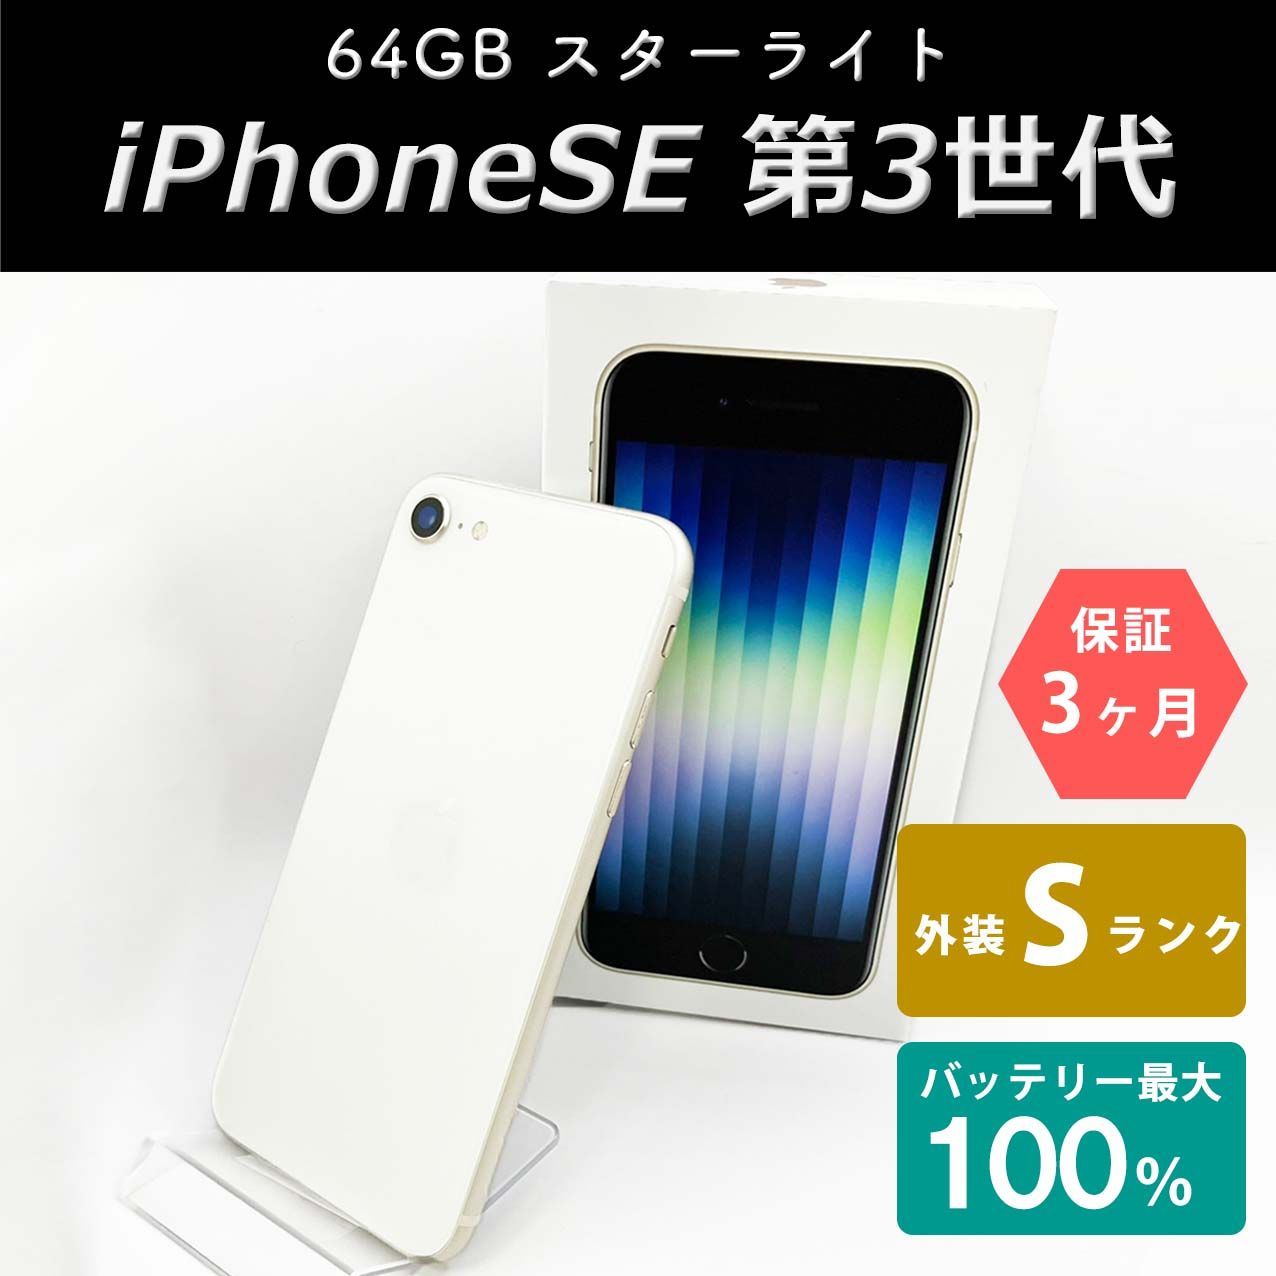 iPhoneSE(第3世代) 64GB スターライト Sランク 未使用品 SIMフリー ...